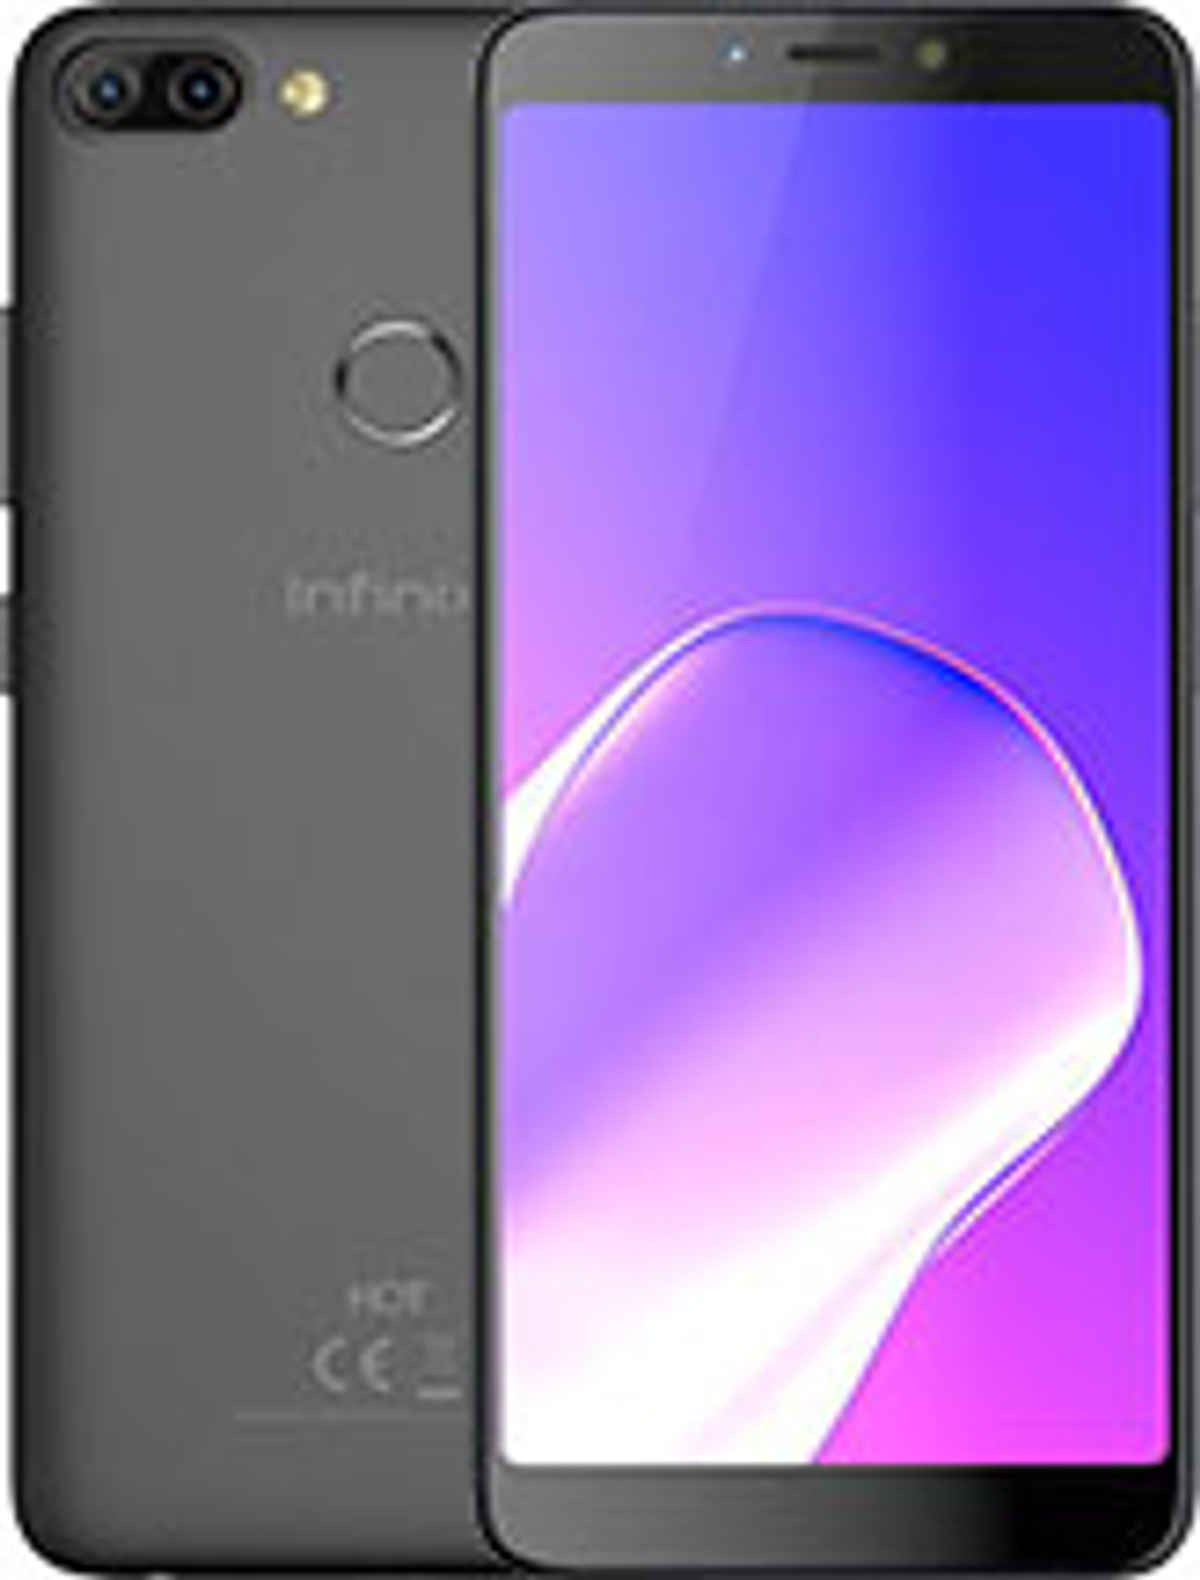 Best Infinix Phones In India 15 July 2020 Latest Smartphones